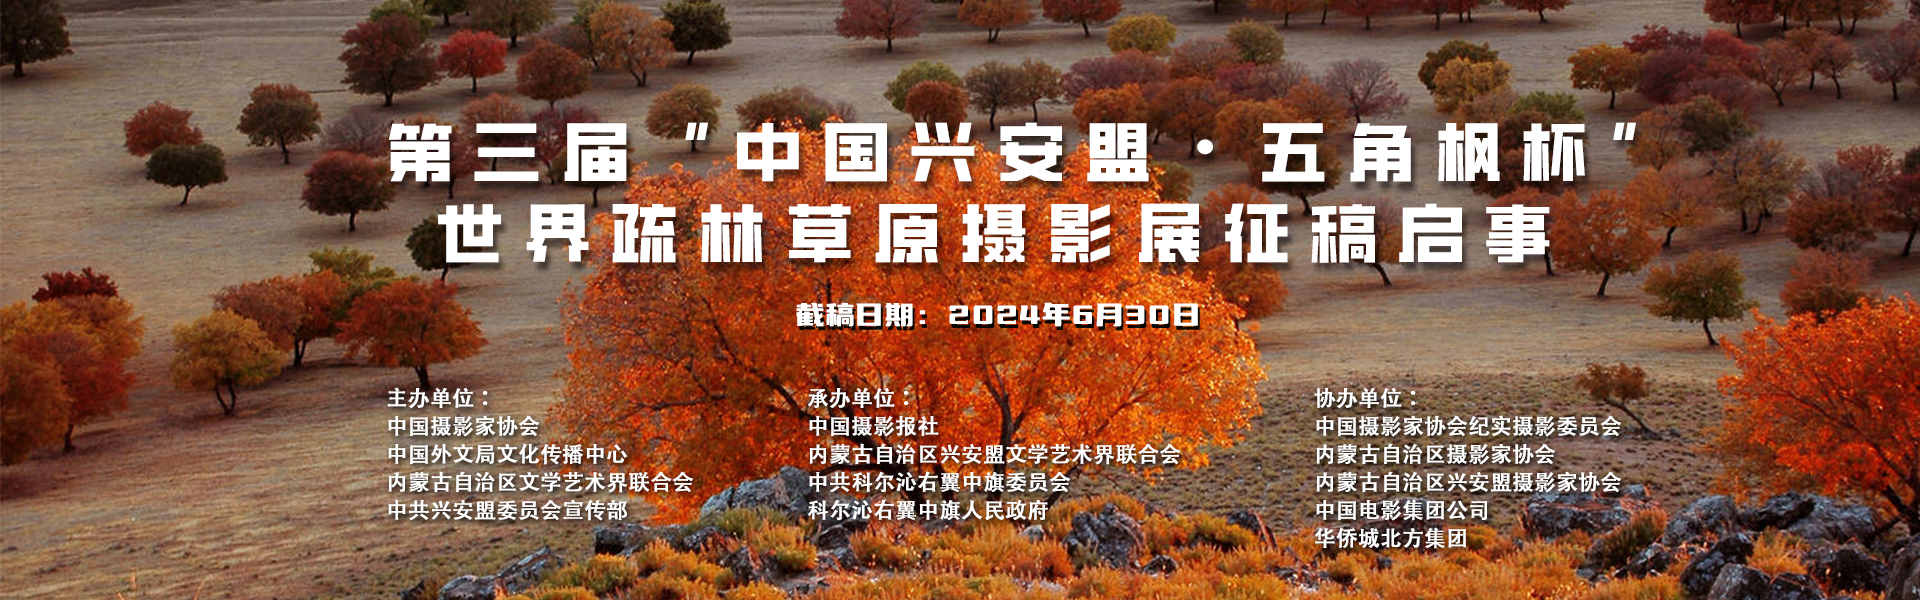 第三届“中国兴安盟·五角枫杯” 世界疏林草原摄影展